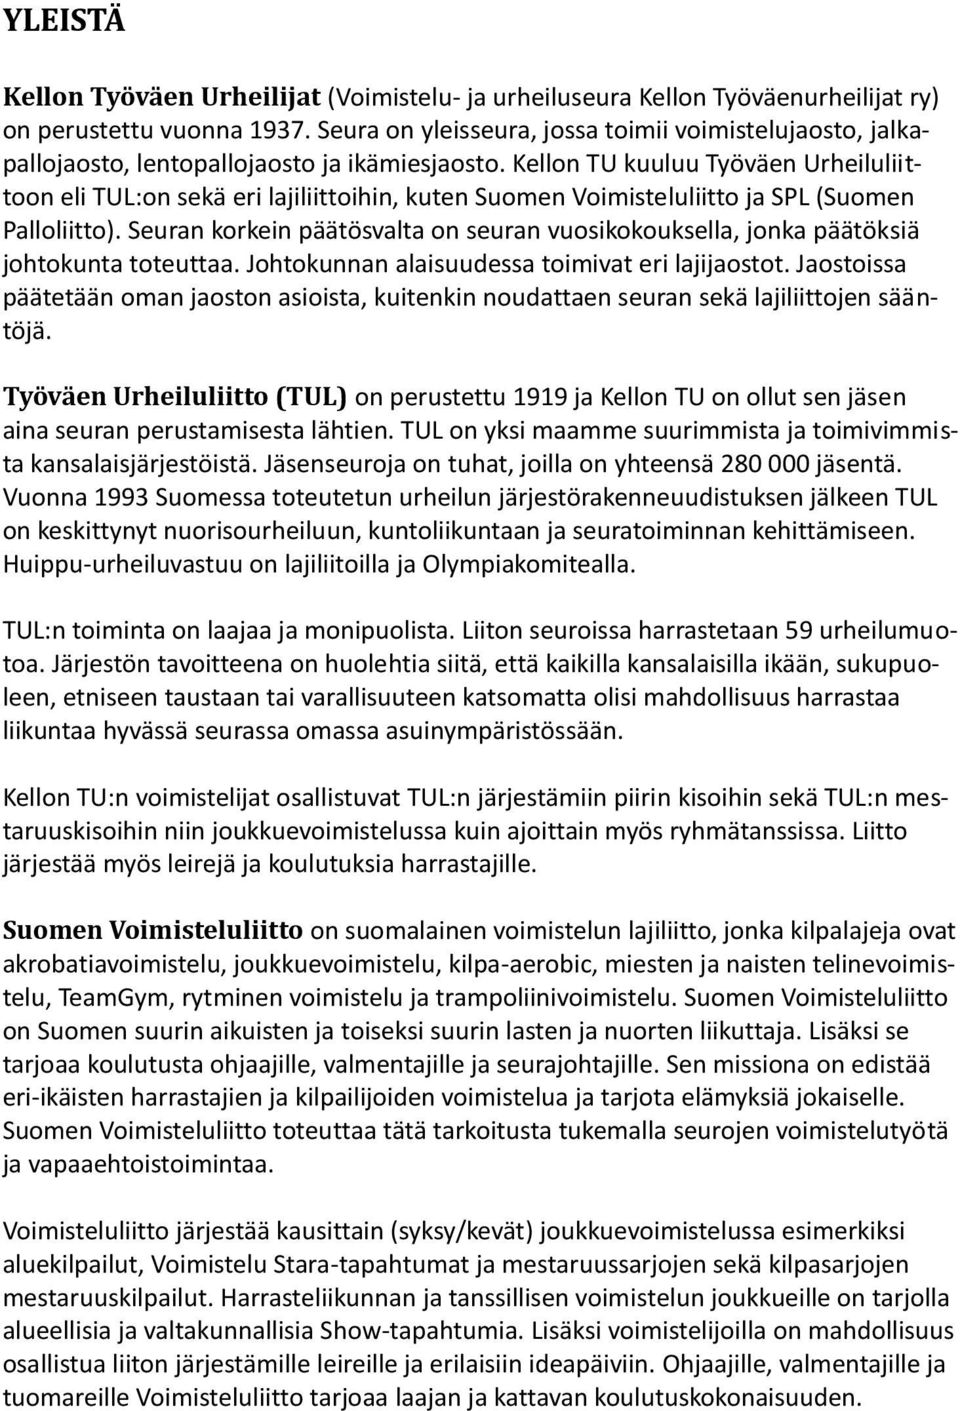 Kellon TU kuuluu Työväen Urheiluliittoon eli TUL:on sekä eri lajiliittoihin, kuten Suomen Voimisteluliitto ja SPL (Suomen Palloliitto).